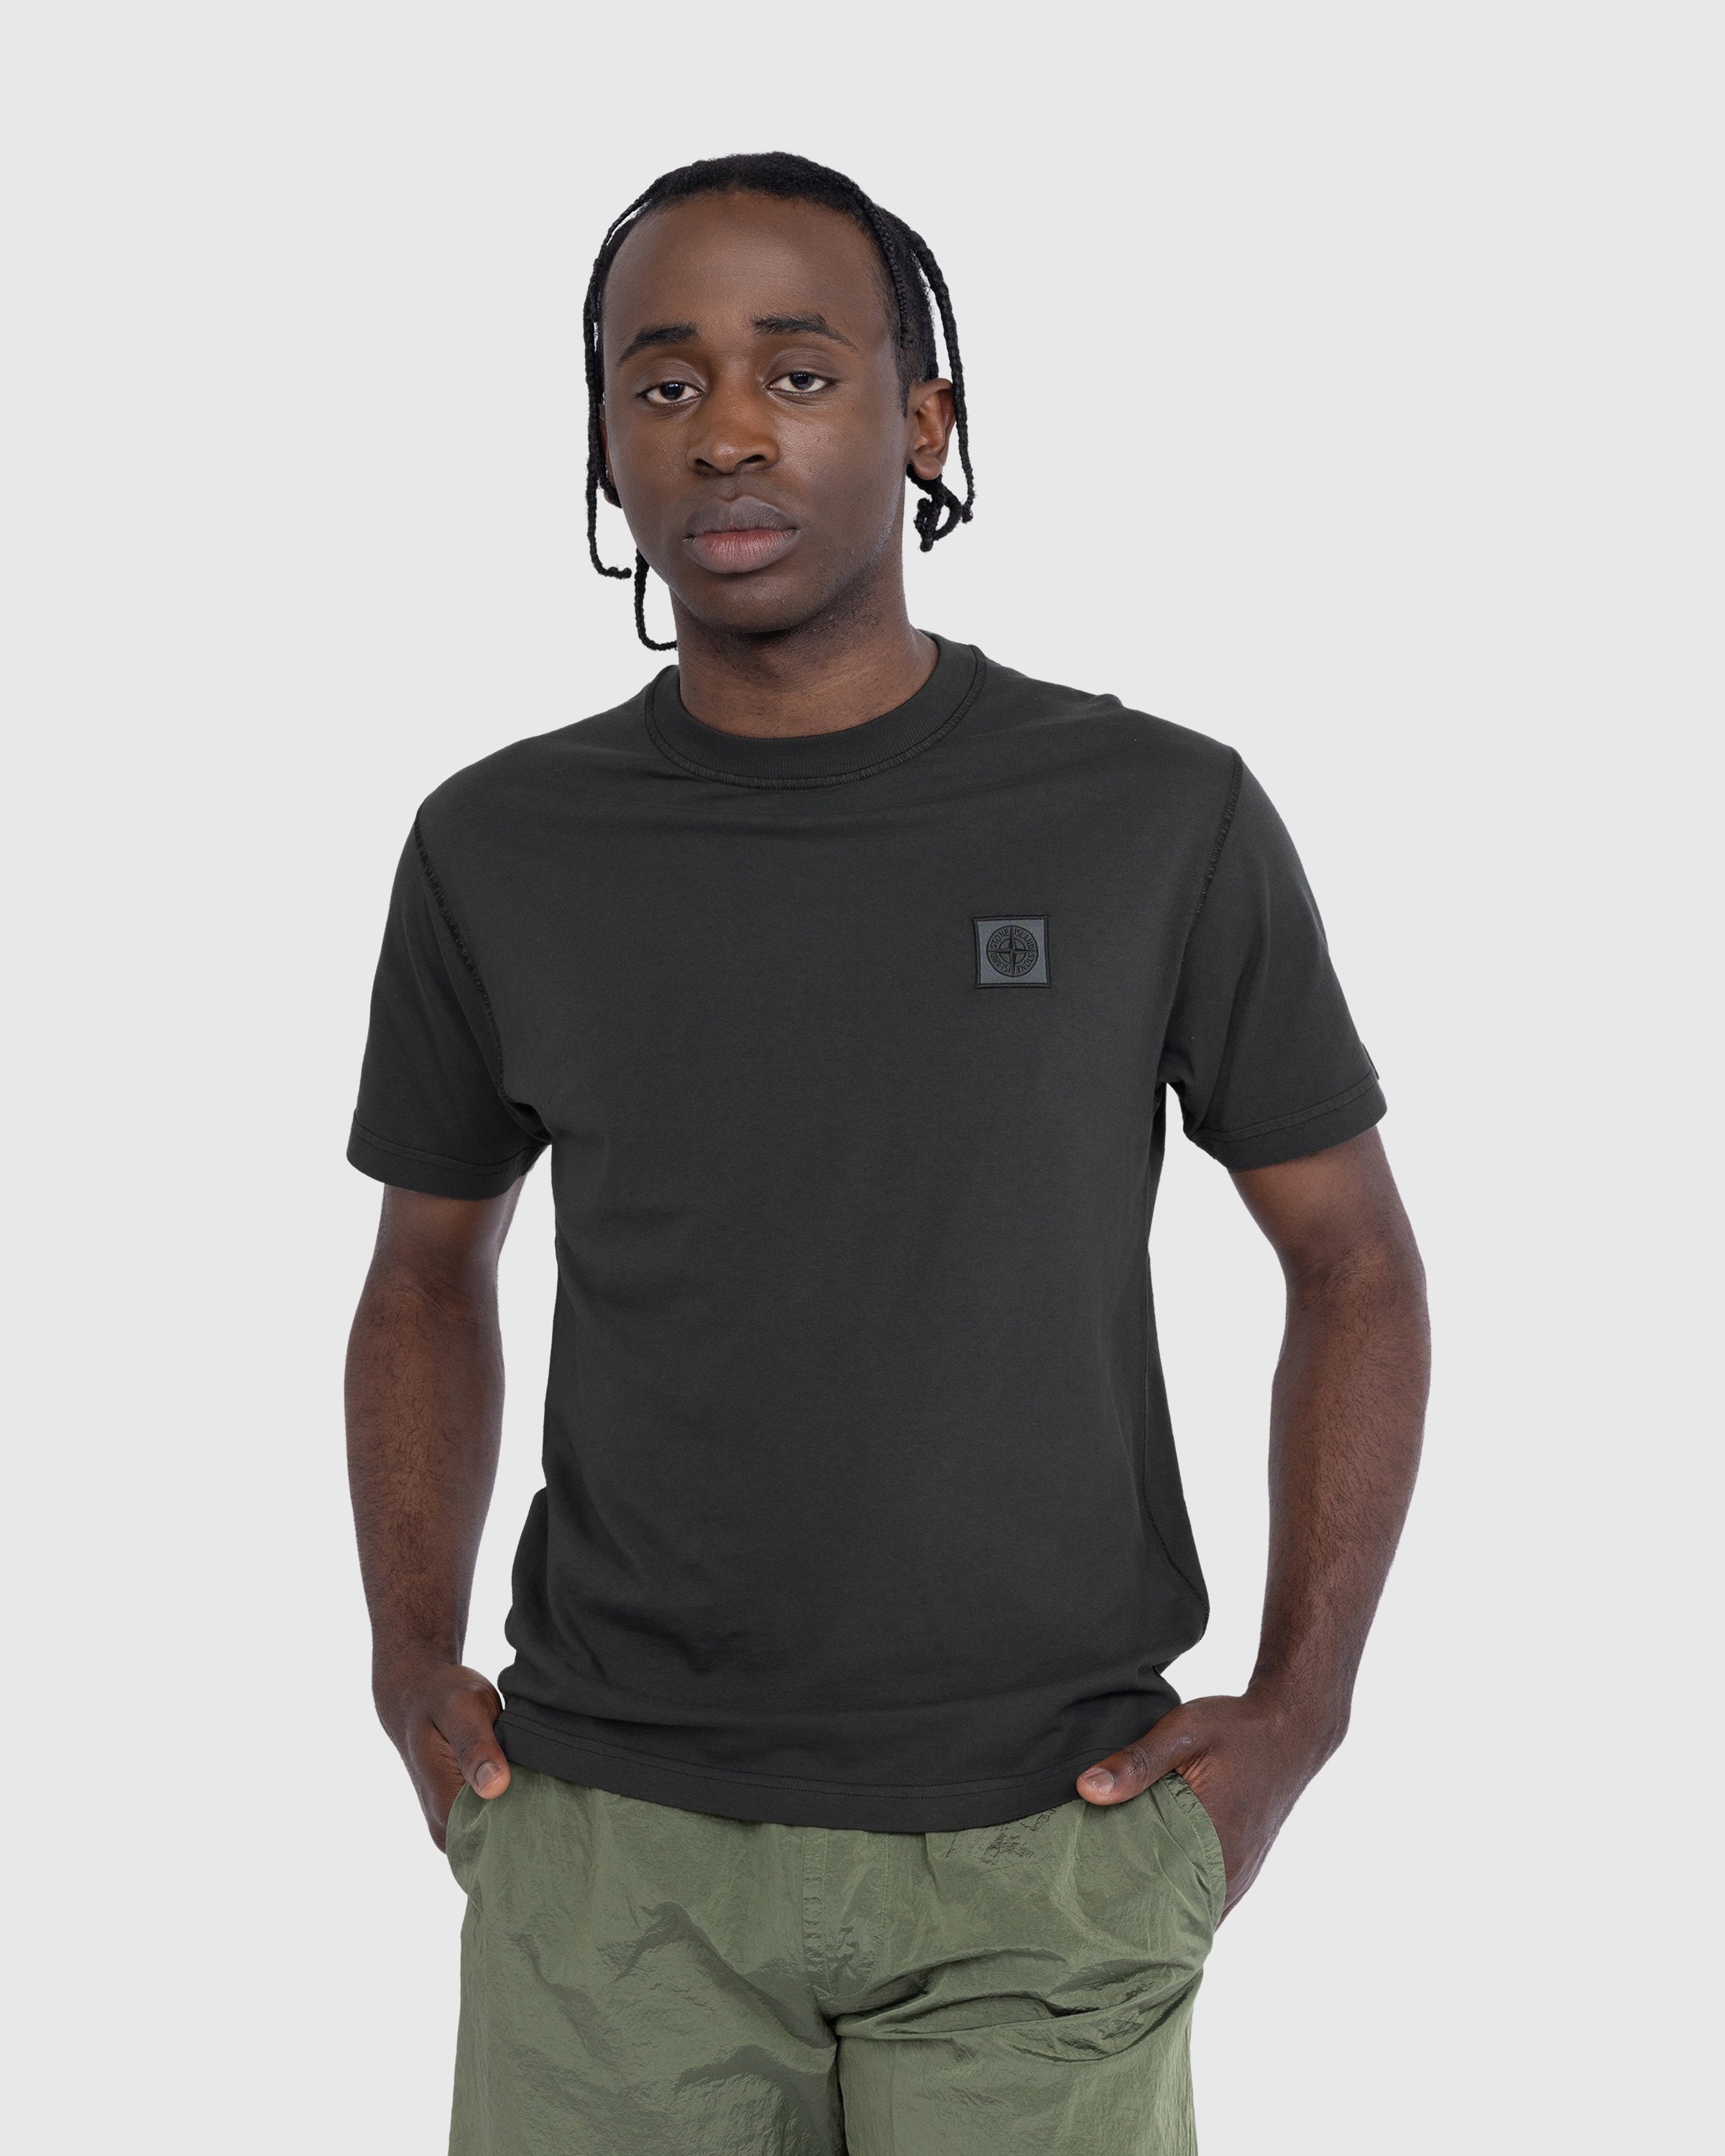 Stone Island - T-Shirt Charcoal 23757 - Clothing - Grey - Image 2